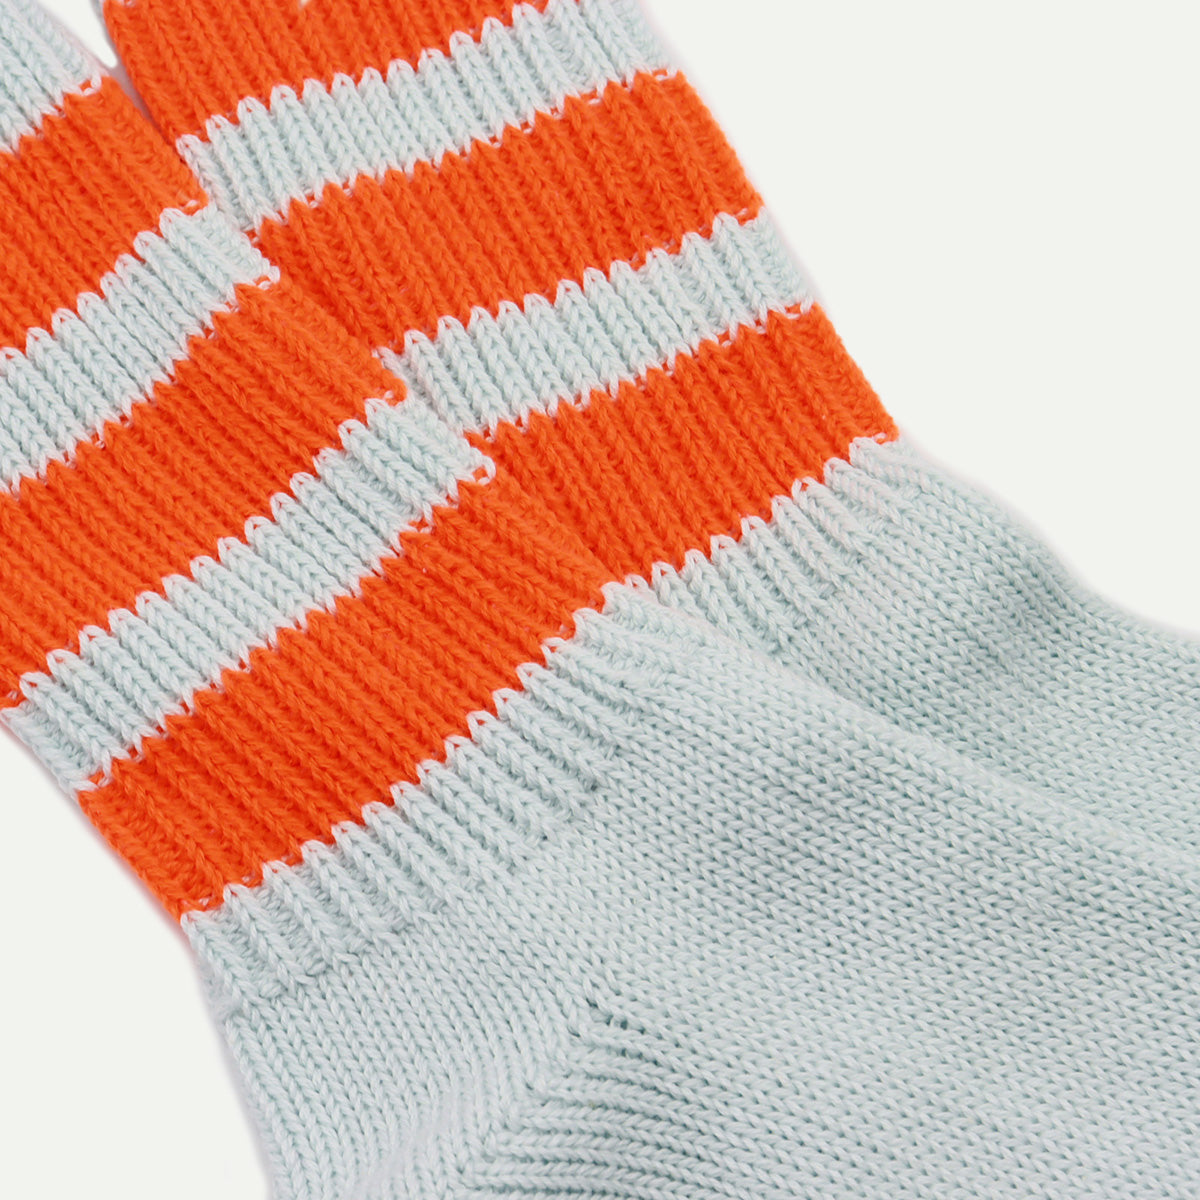 Rostersox Orange Boston Socks